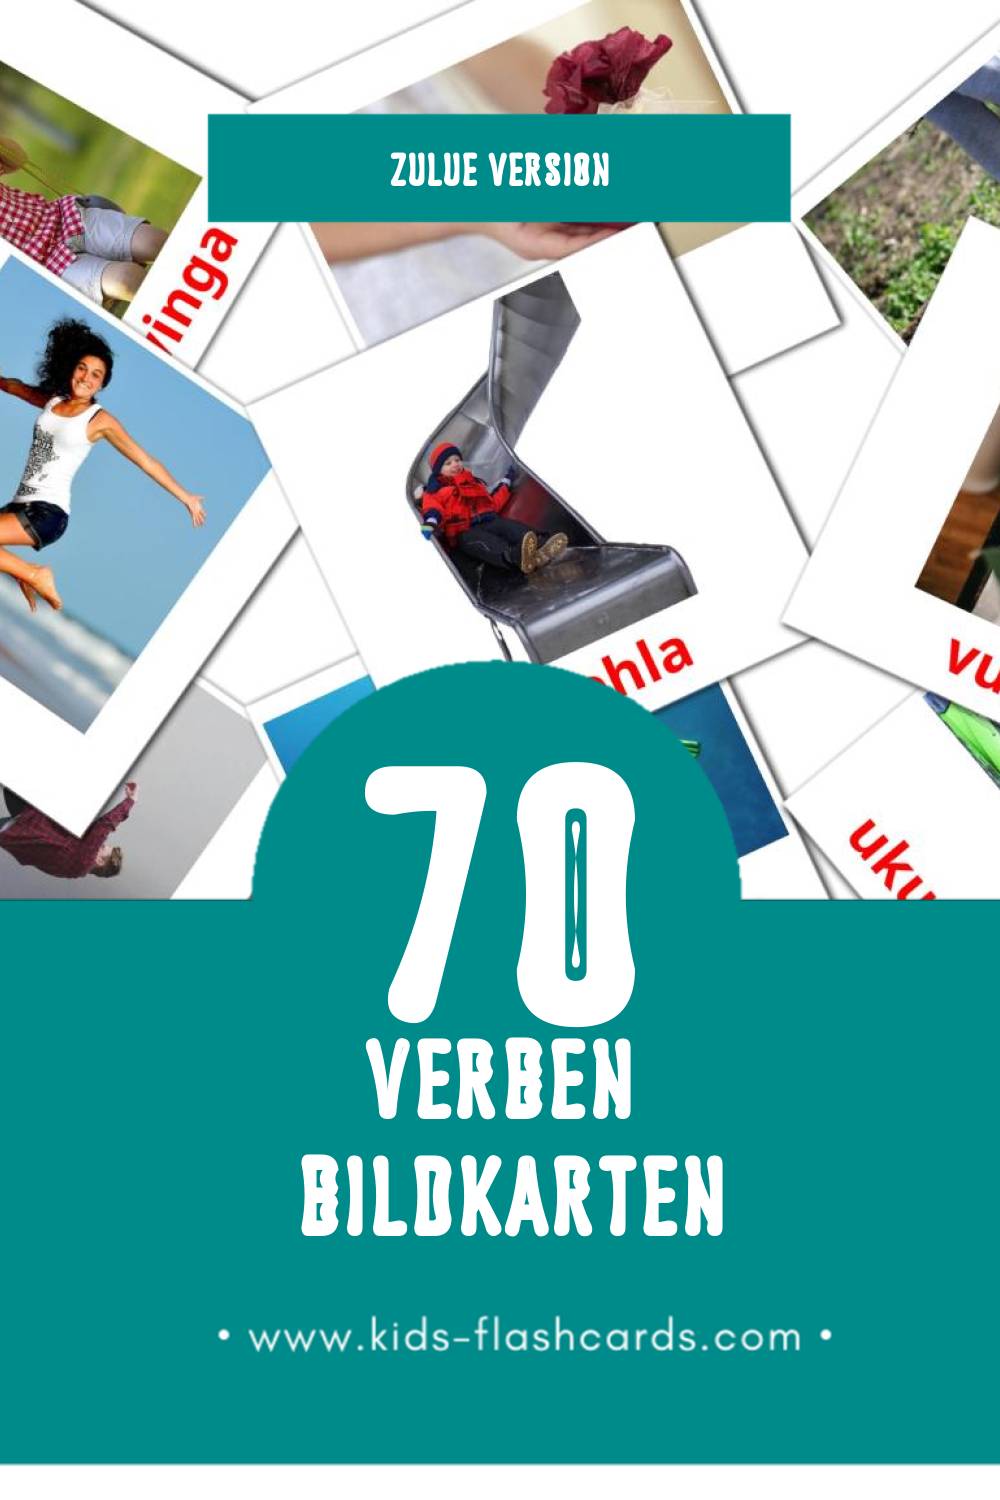 Visual Izenzo  Flashcards für Kleinkinder (70 Karten in Zulu)